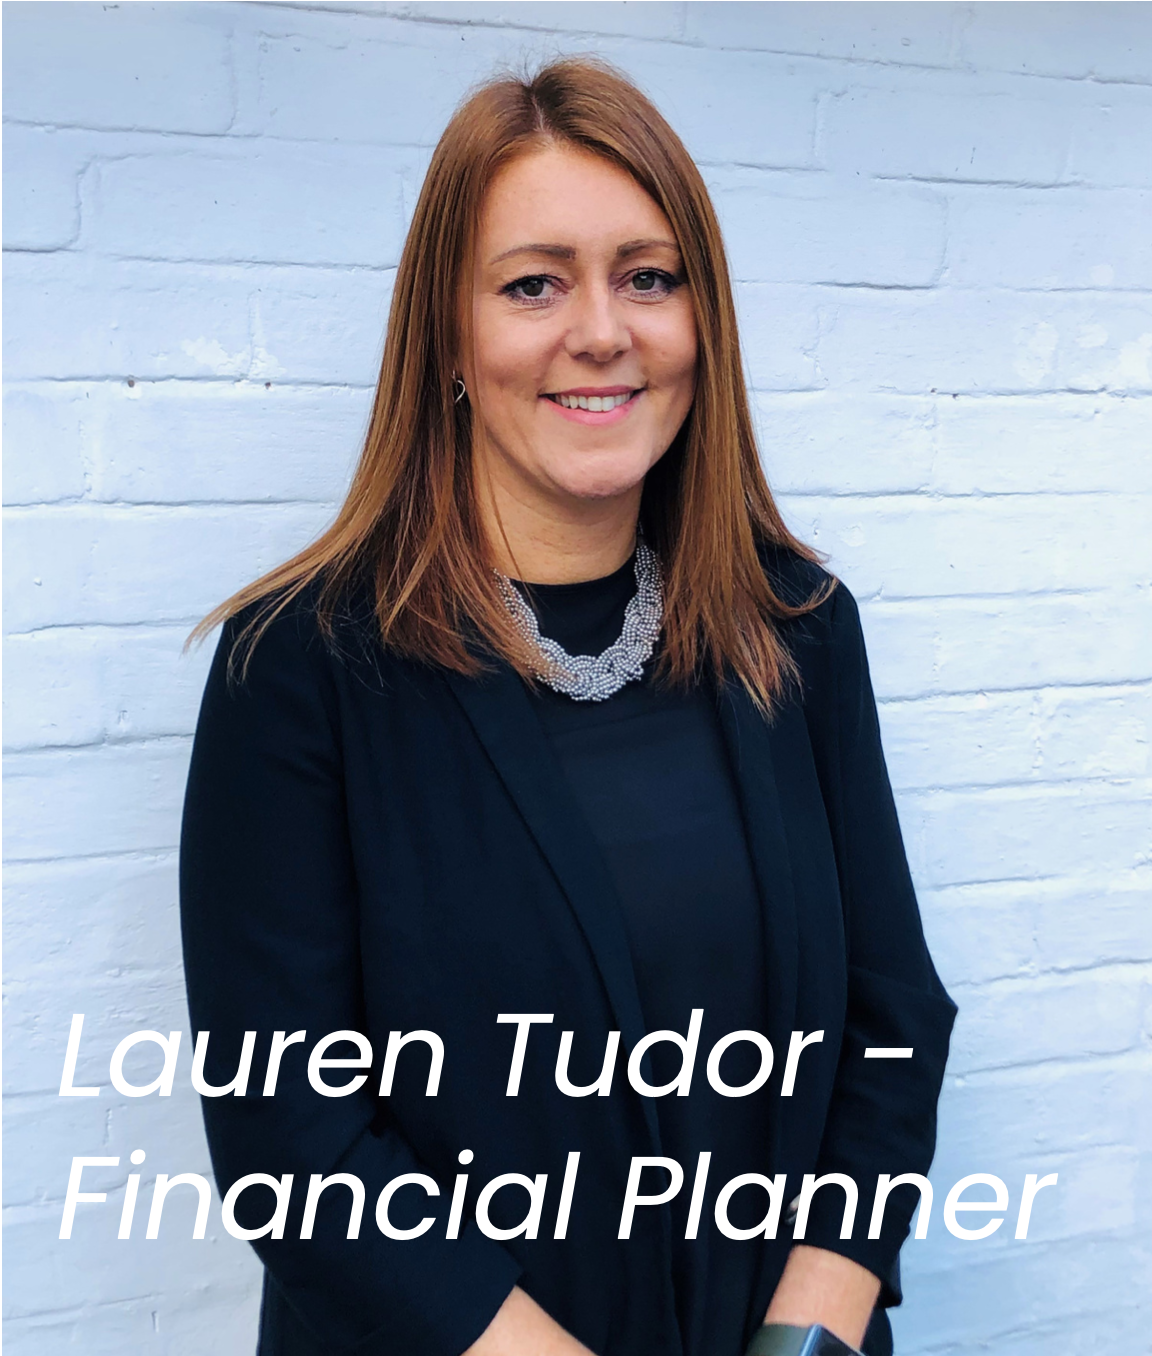 Lauren Tudor - Financial Planner